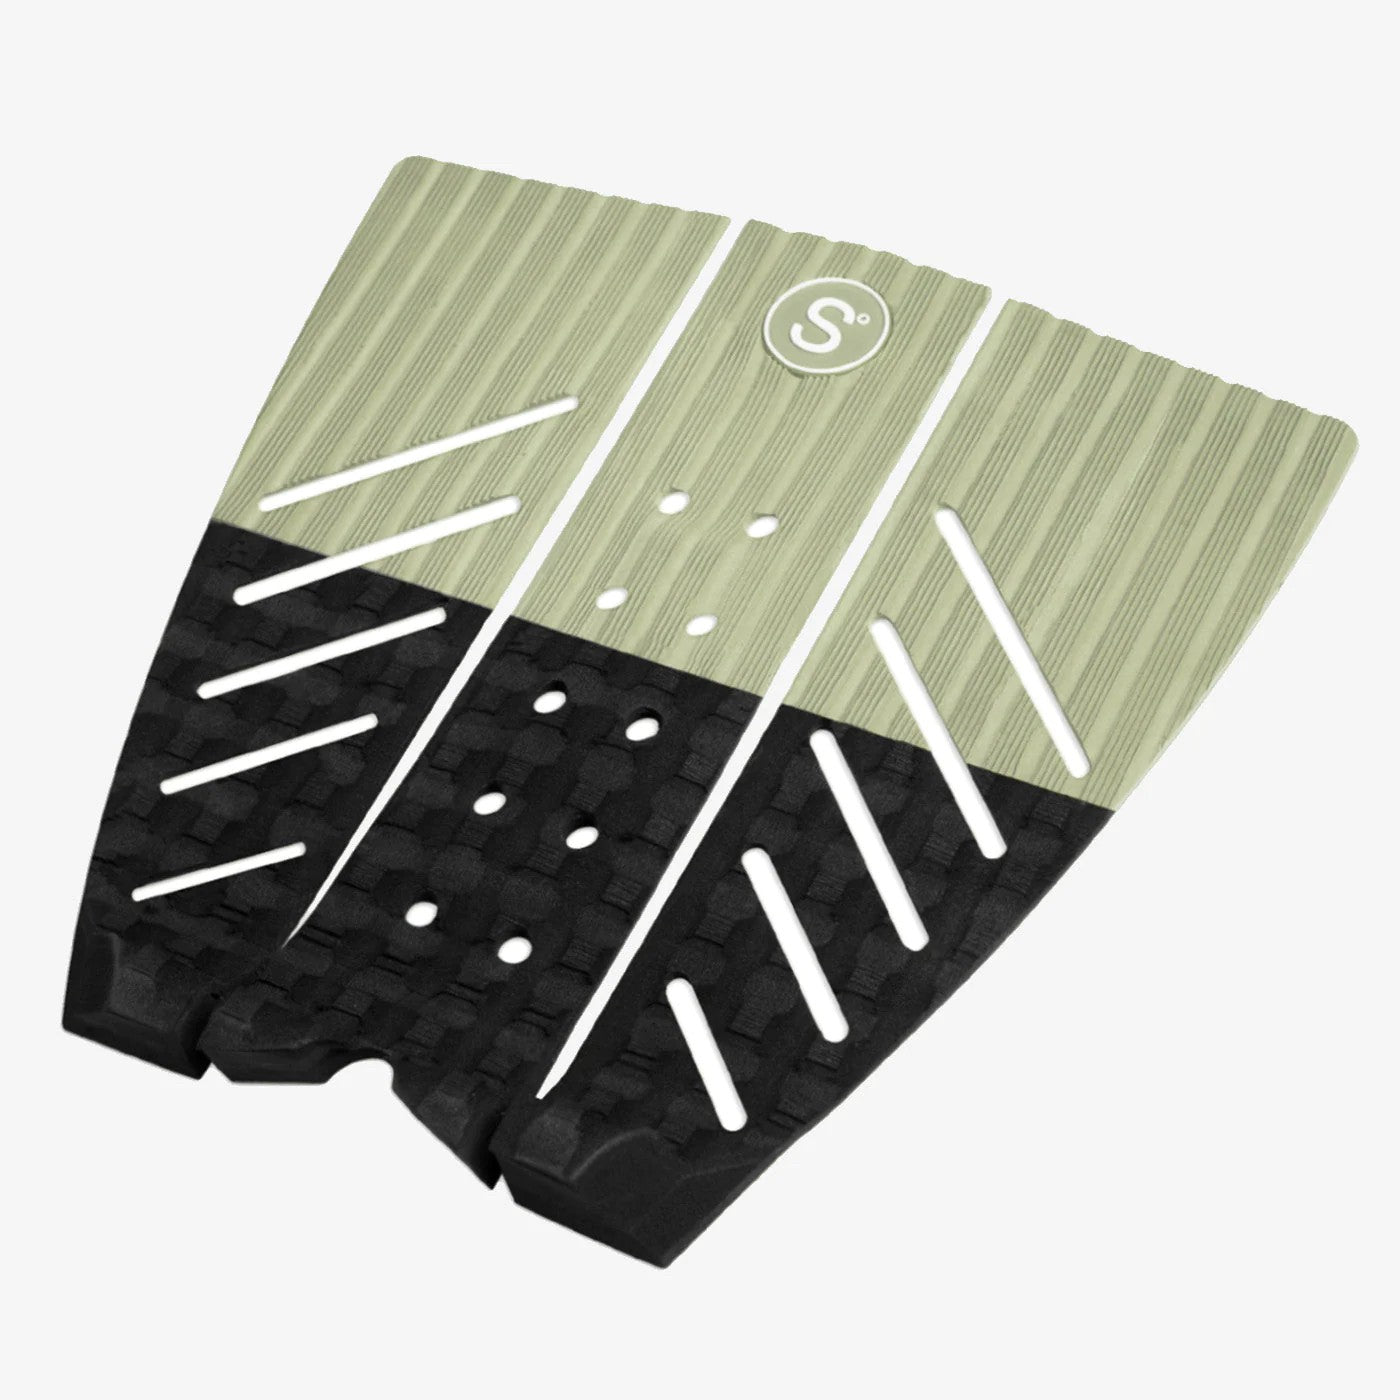 SYMPL NO 4 - Traction Pad Surf 3 piezas - Verde / Negro